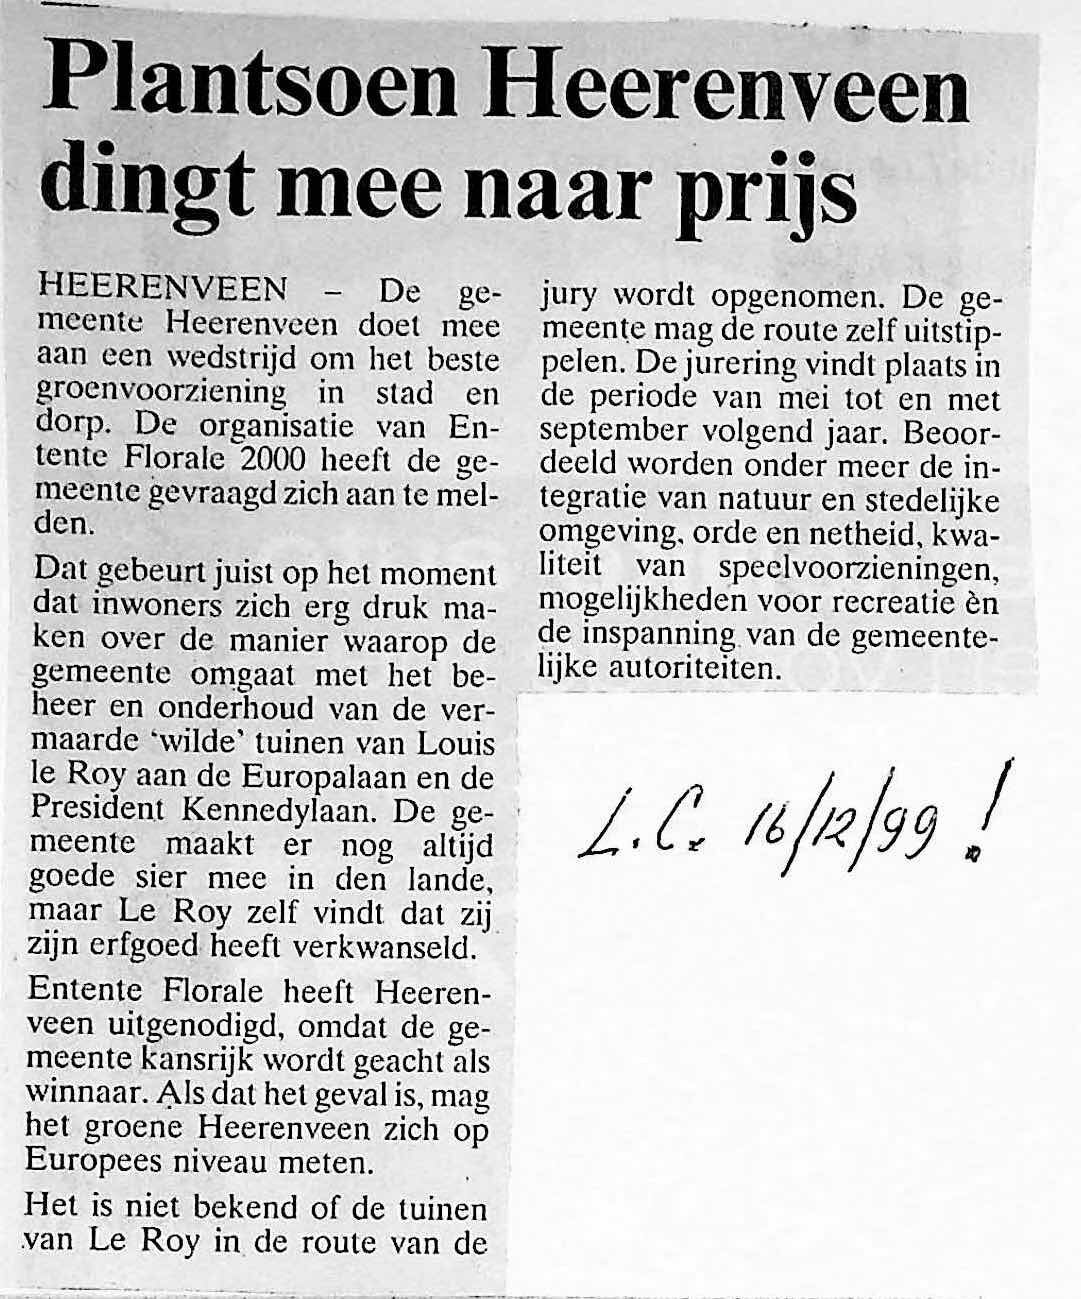 19991216_Plantsoen_Heerenveen_dingt_mee_naar_prijs.jpeg